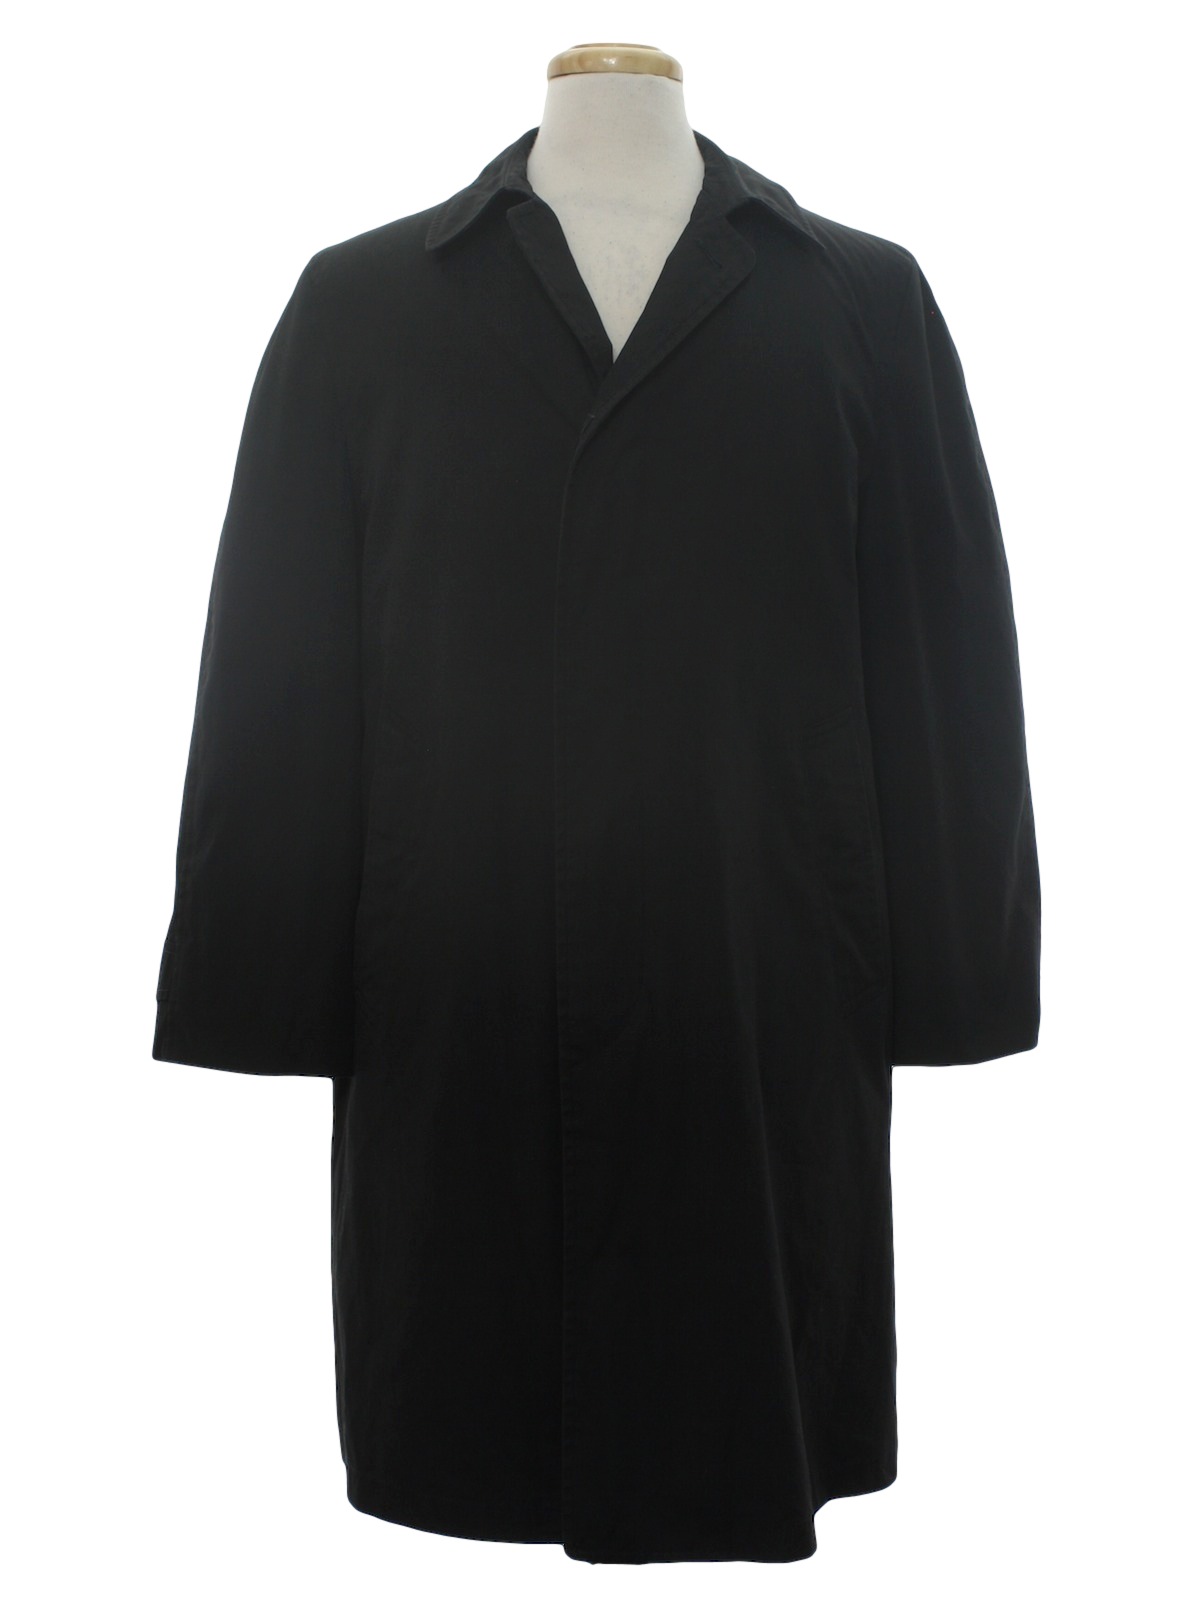 Retro 1960's Jacket (London Fog) : 60s -London Fog- Mens black cotton ...